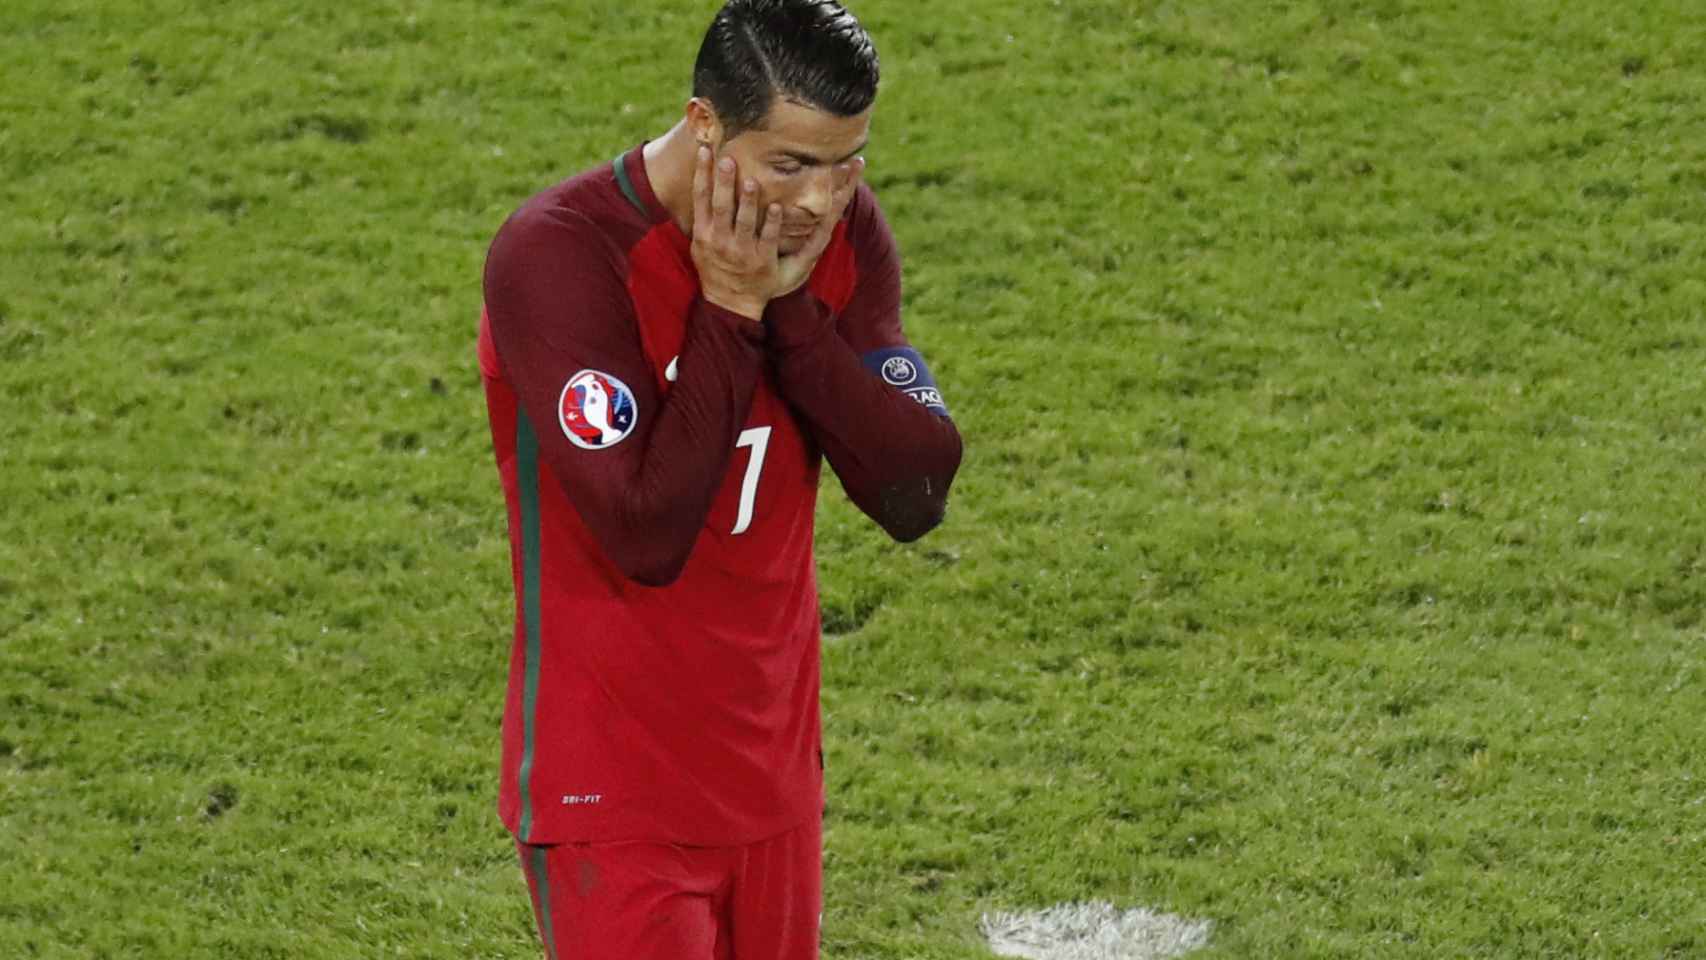 Cristiano Ronaldo se lamenta tras fallar un penalti.